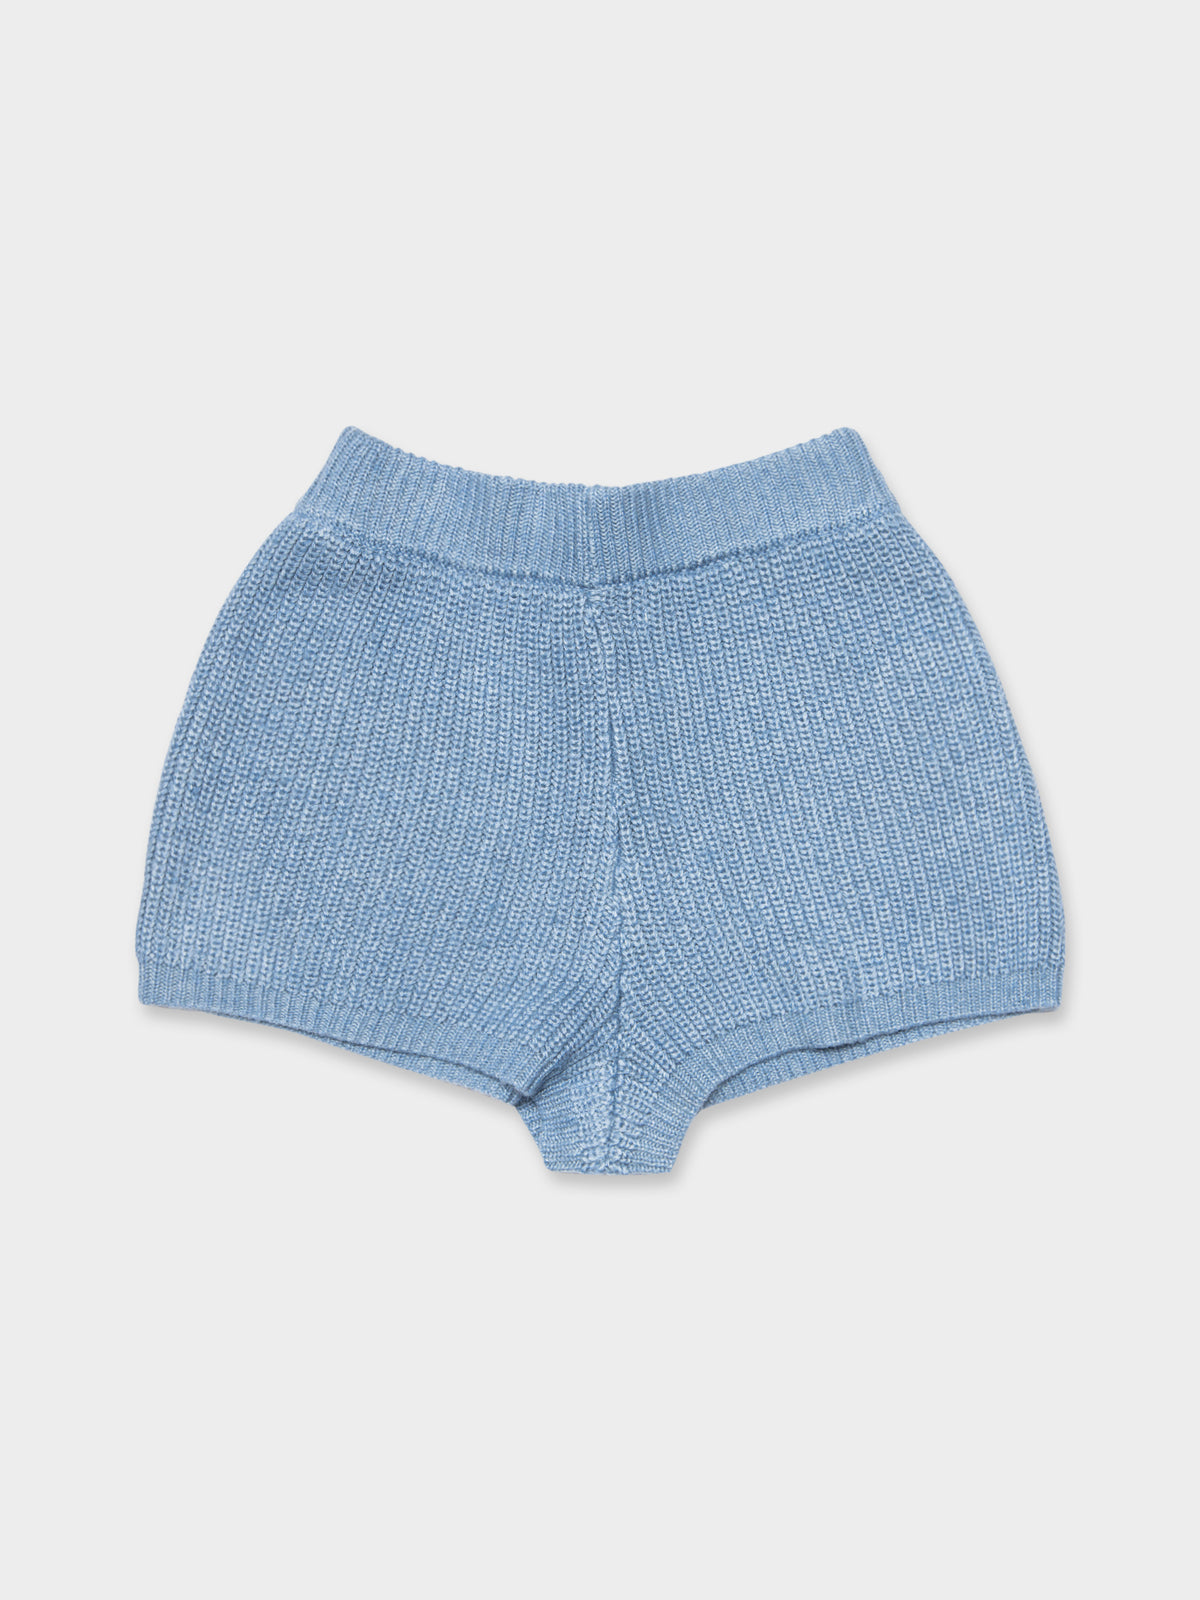 Maya Knit Shorts in Blue